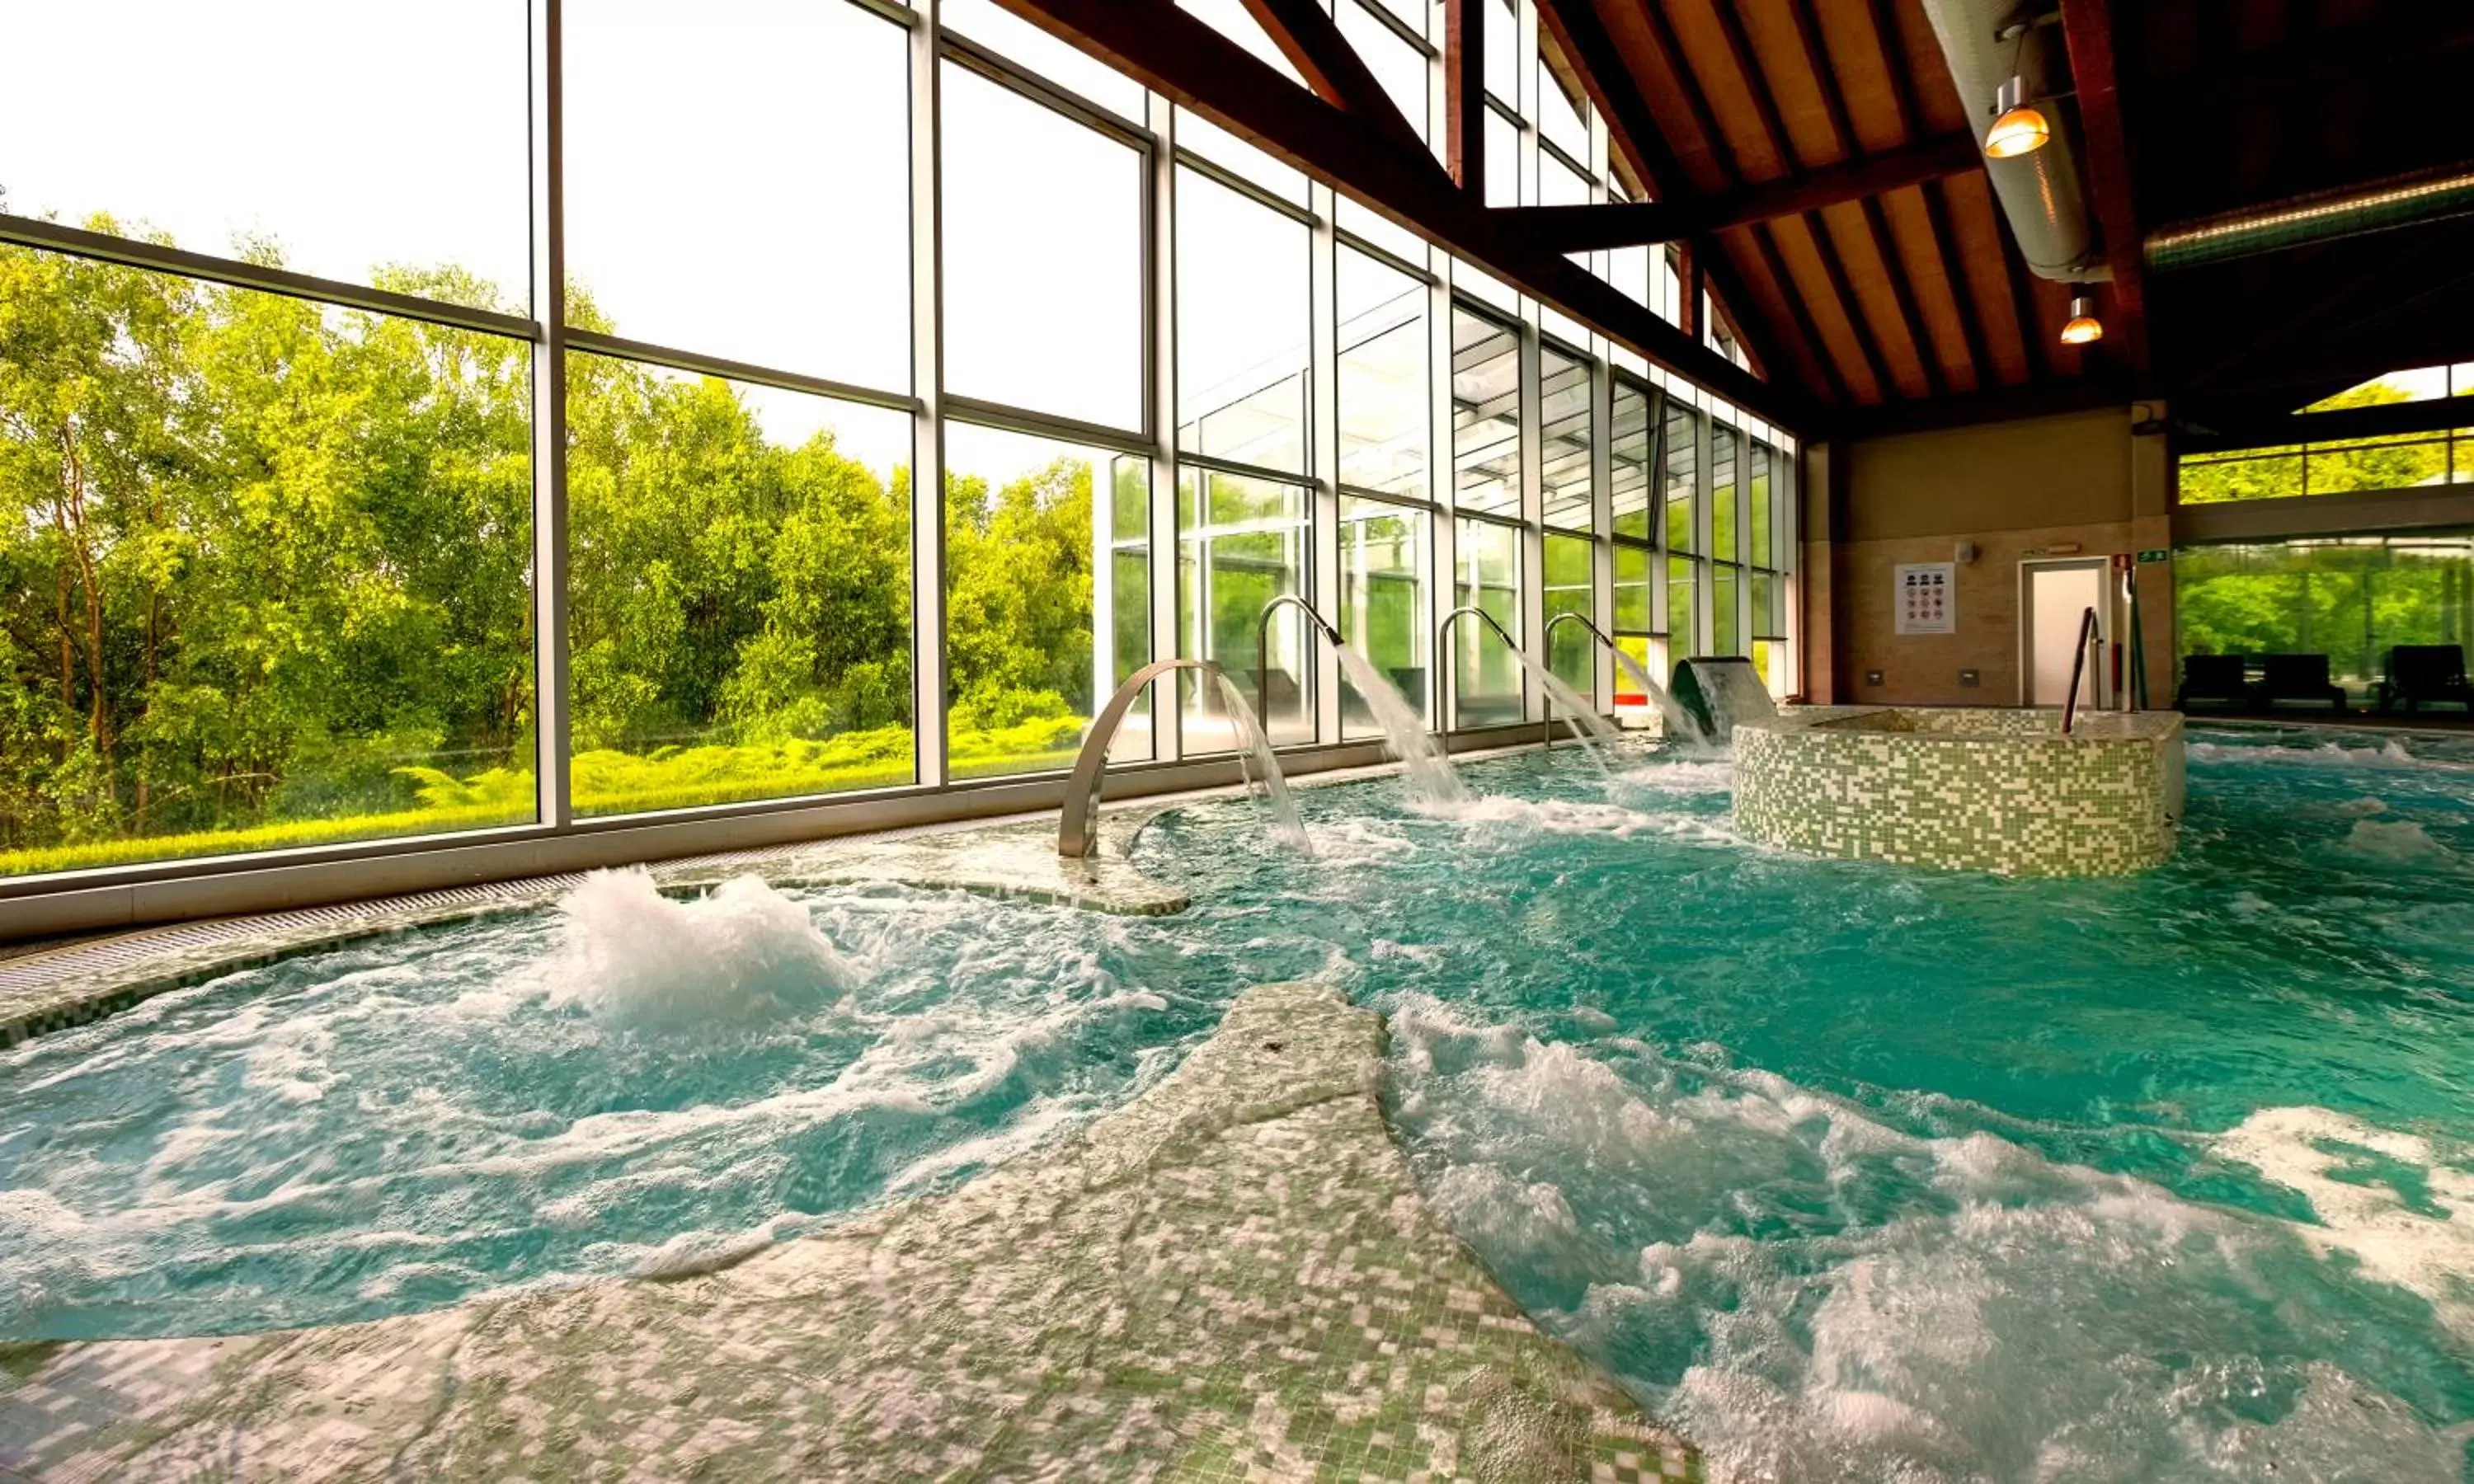 Spa and wellness centre/facilities, Swimming Pool in Hotel Spa Attica21 Villalba